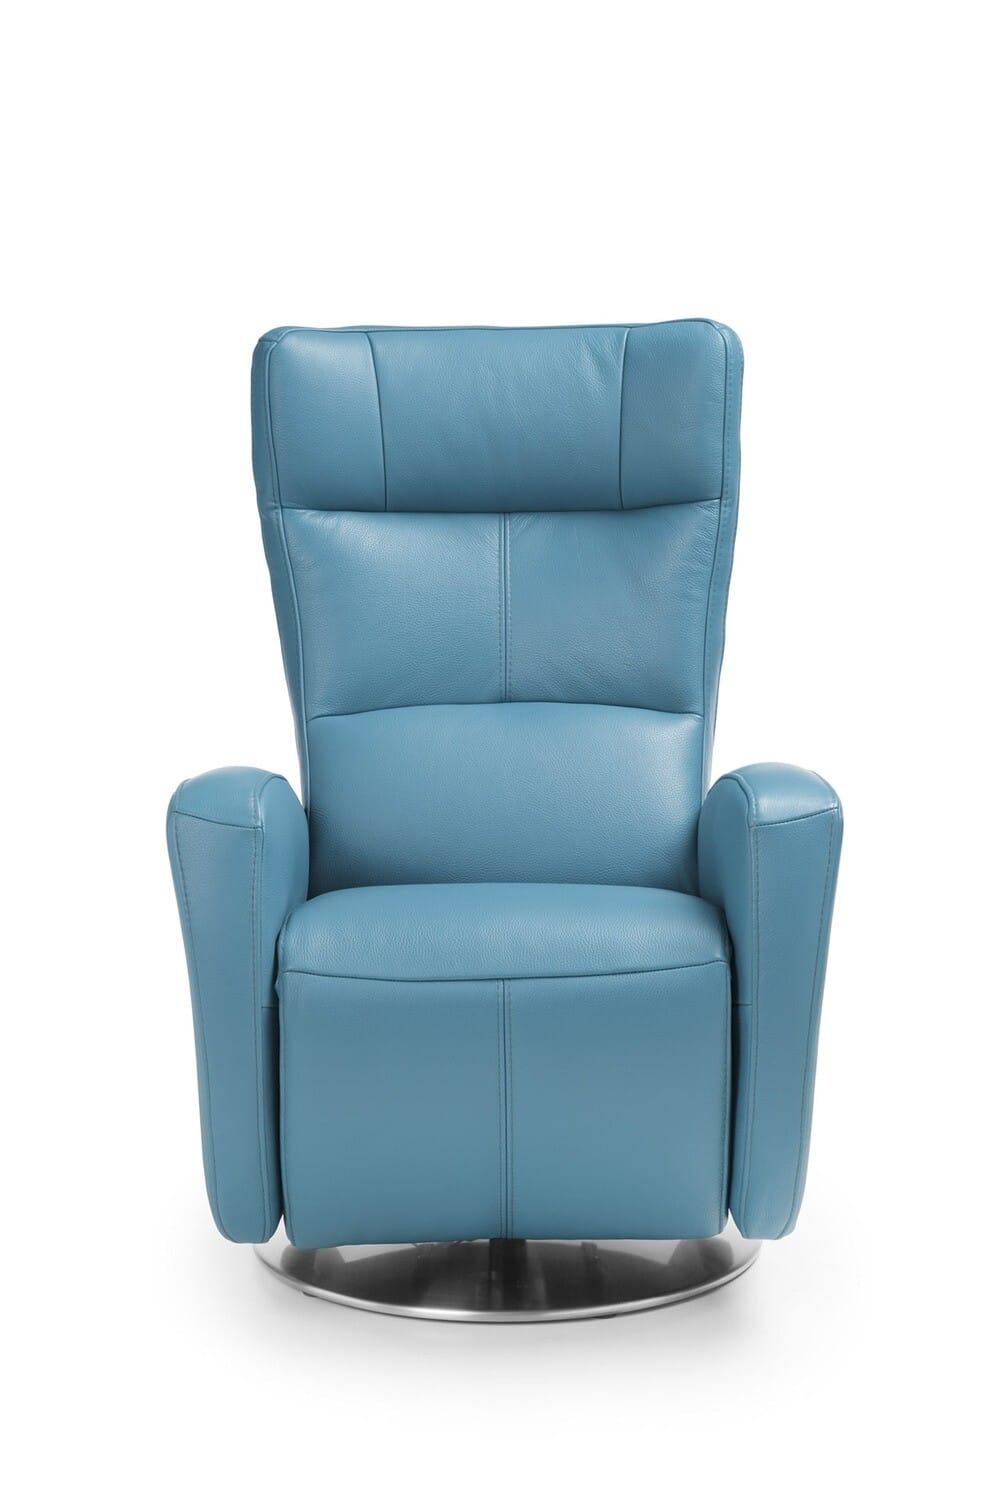 Fotoliu pivotant relax de design, cu funcție de relaxare selectabilă, lățime și picior ale scaunului selectabile sau opțiune din material lat/piele naturală.